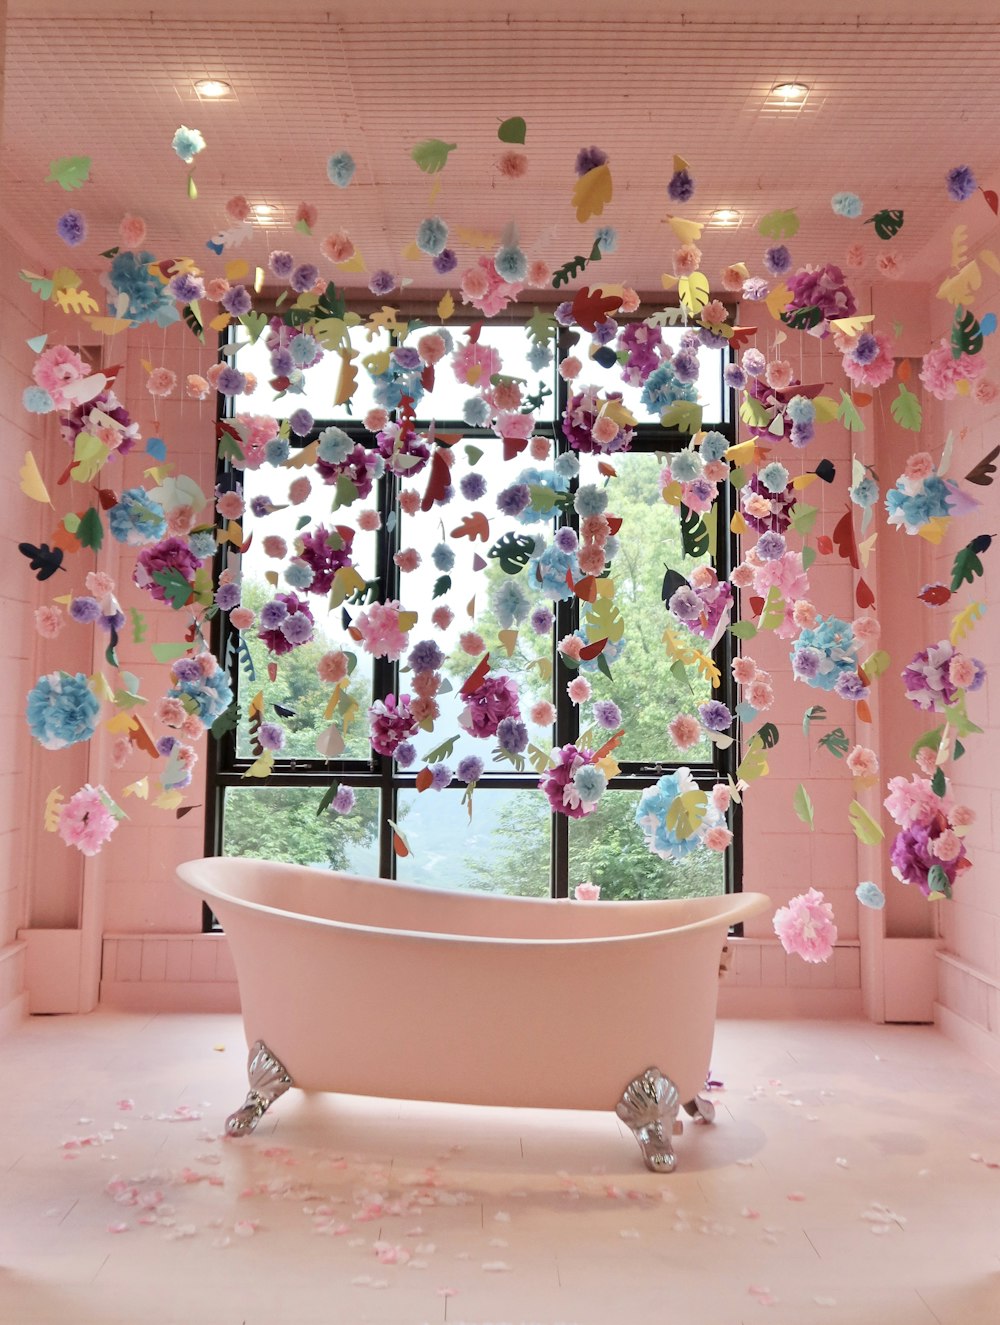 Bañera de cerámica blanca con cortina floral azul, verde y rosa